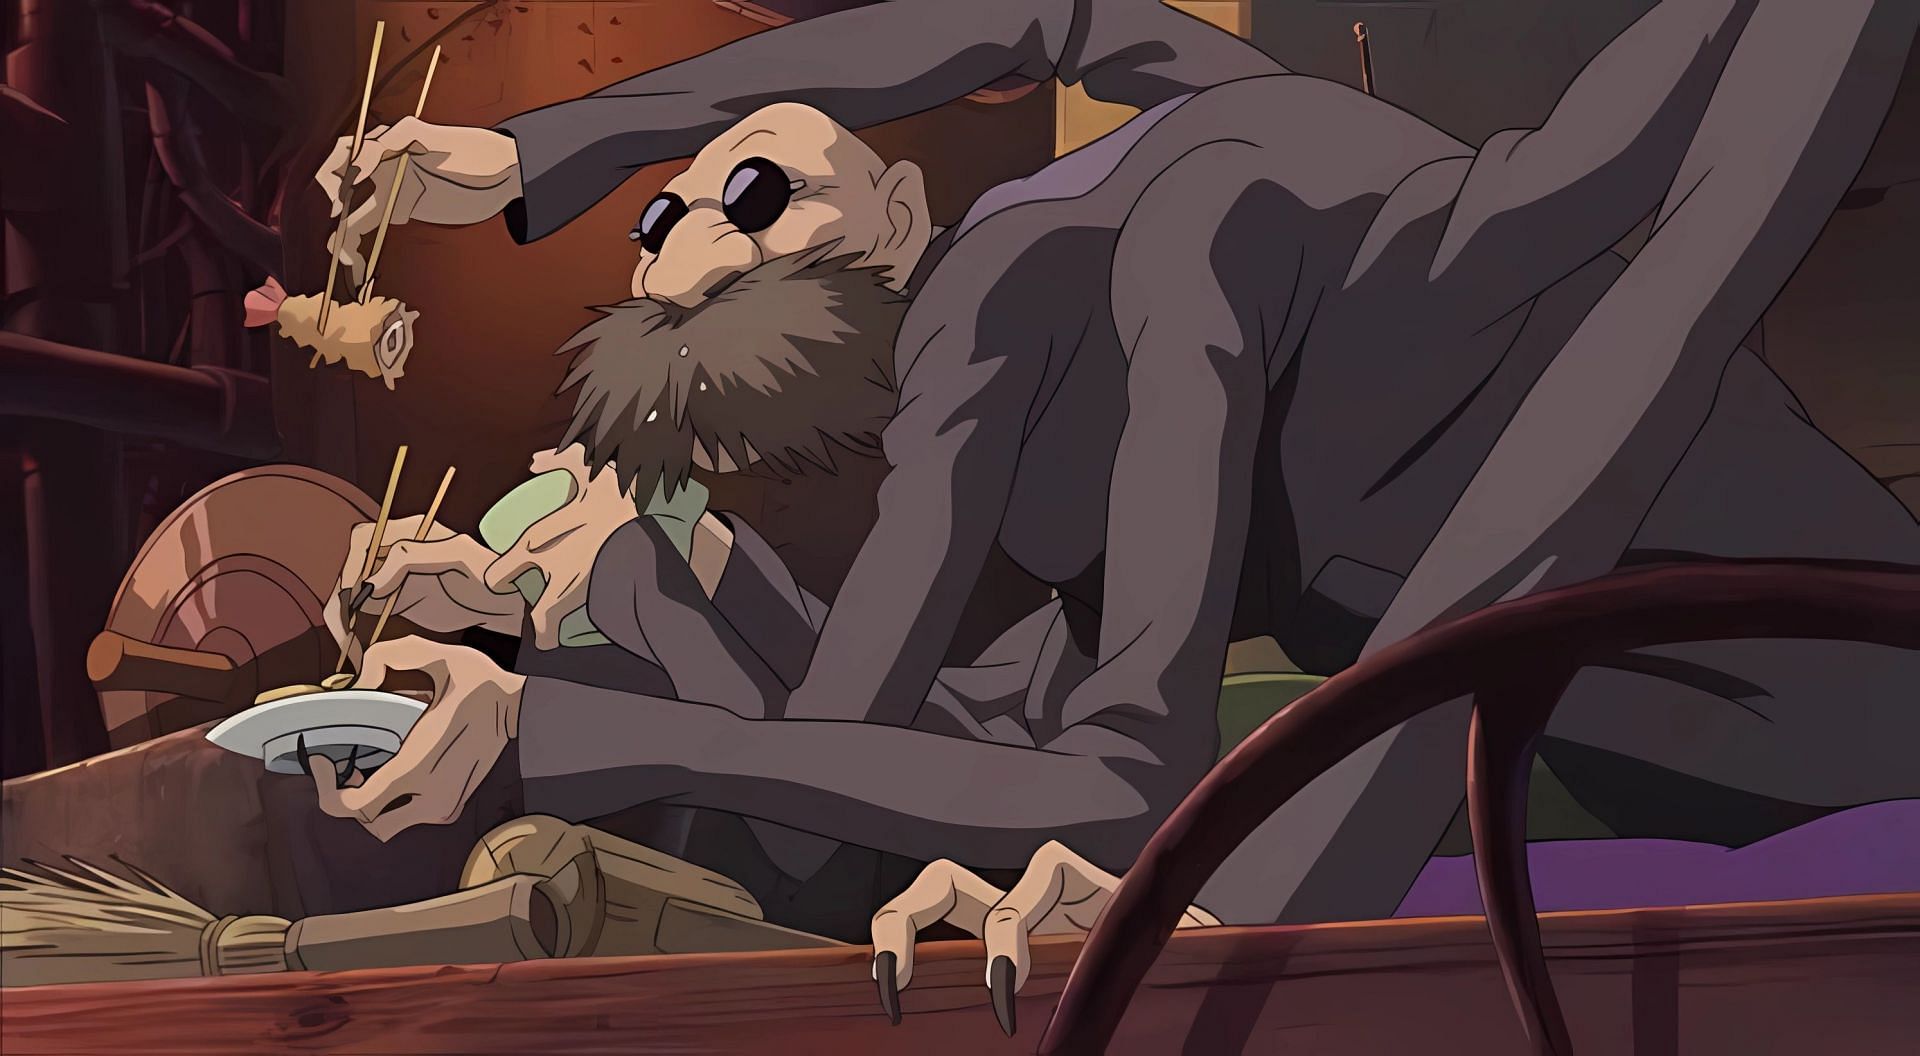 Kamaji as seen in the film (Image via Studio Ghibli)